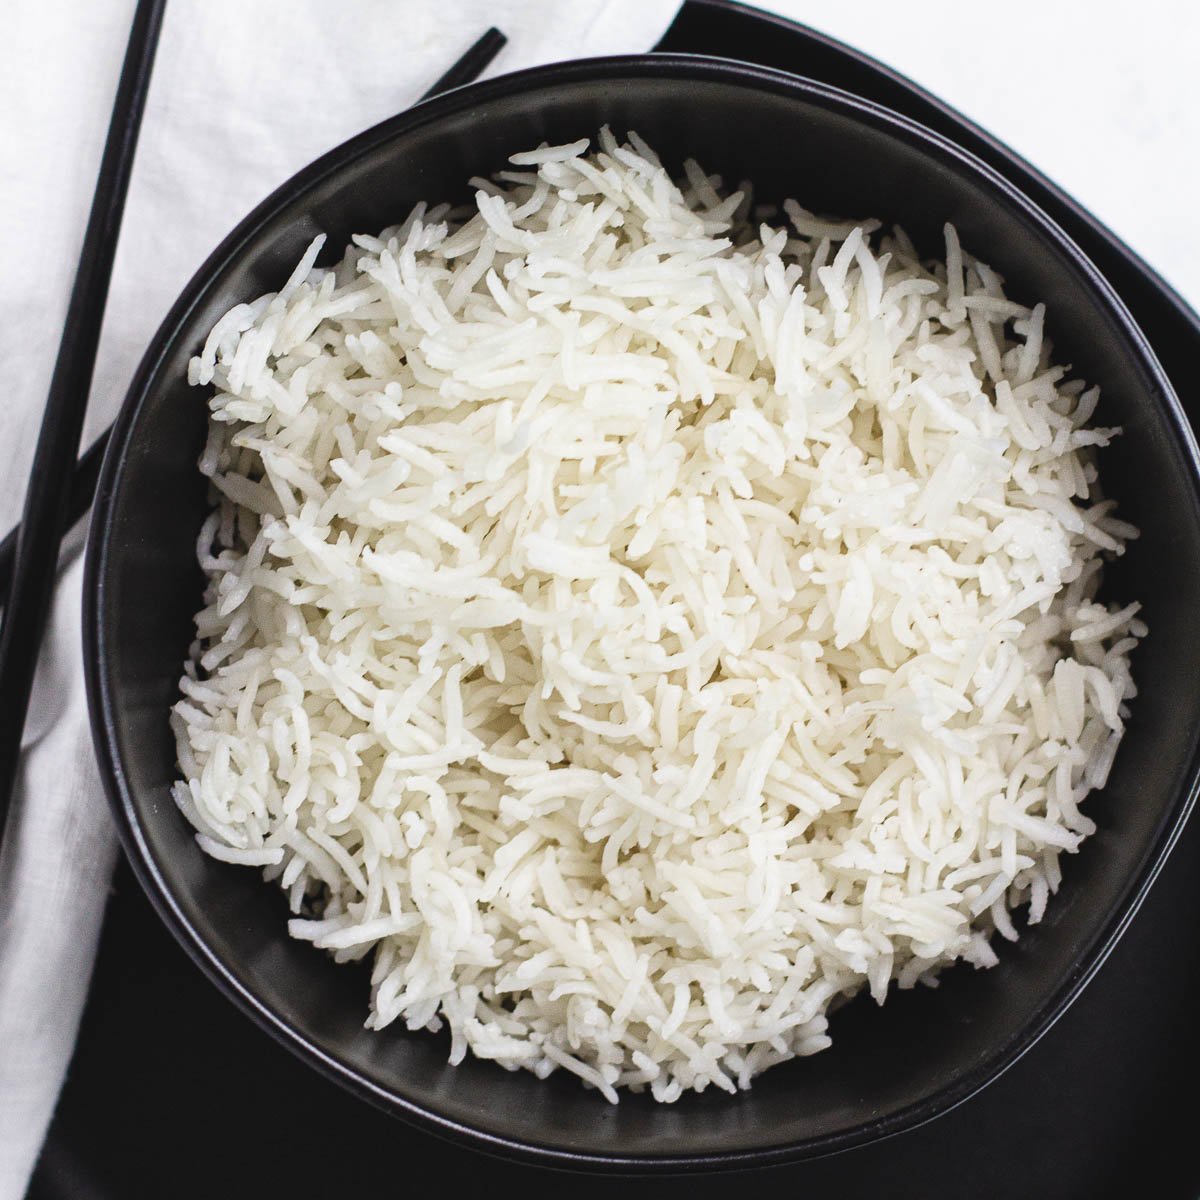 White rice in black bowl.